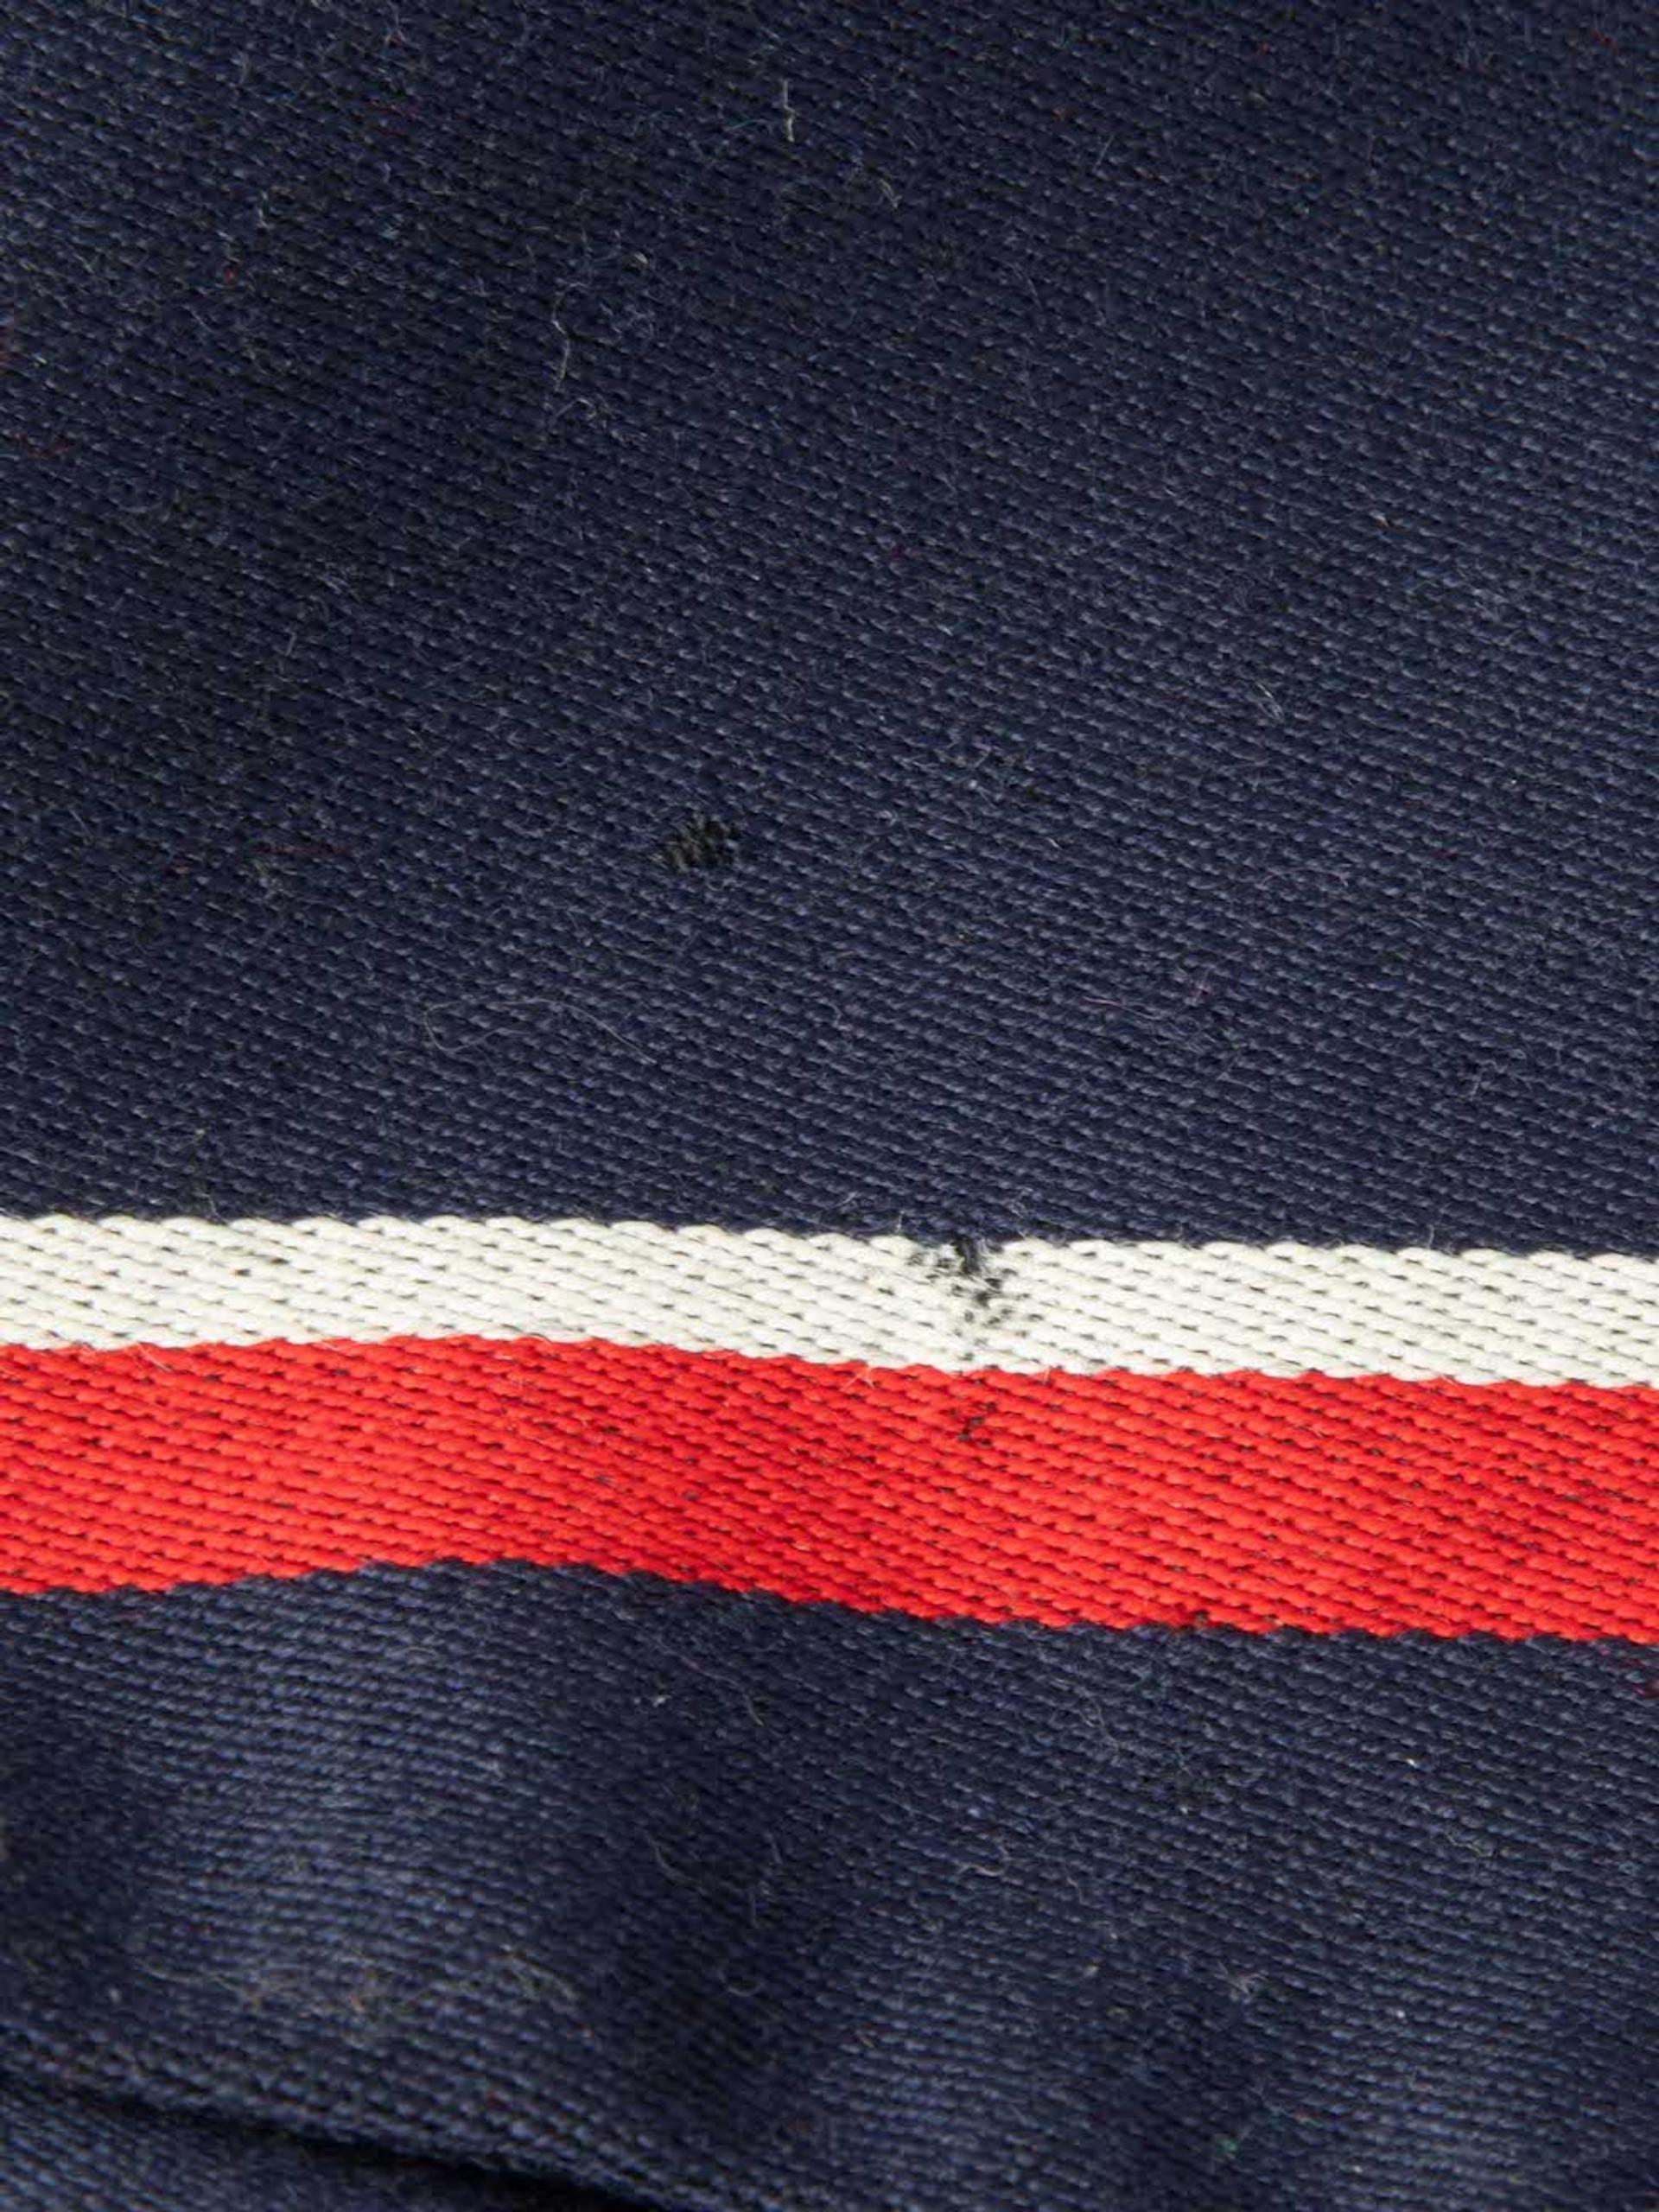 Women's Altuzarra Navy Wool Striped Knee Length Skirt Size M For Sale